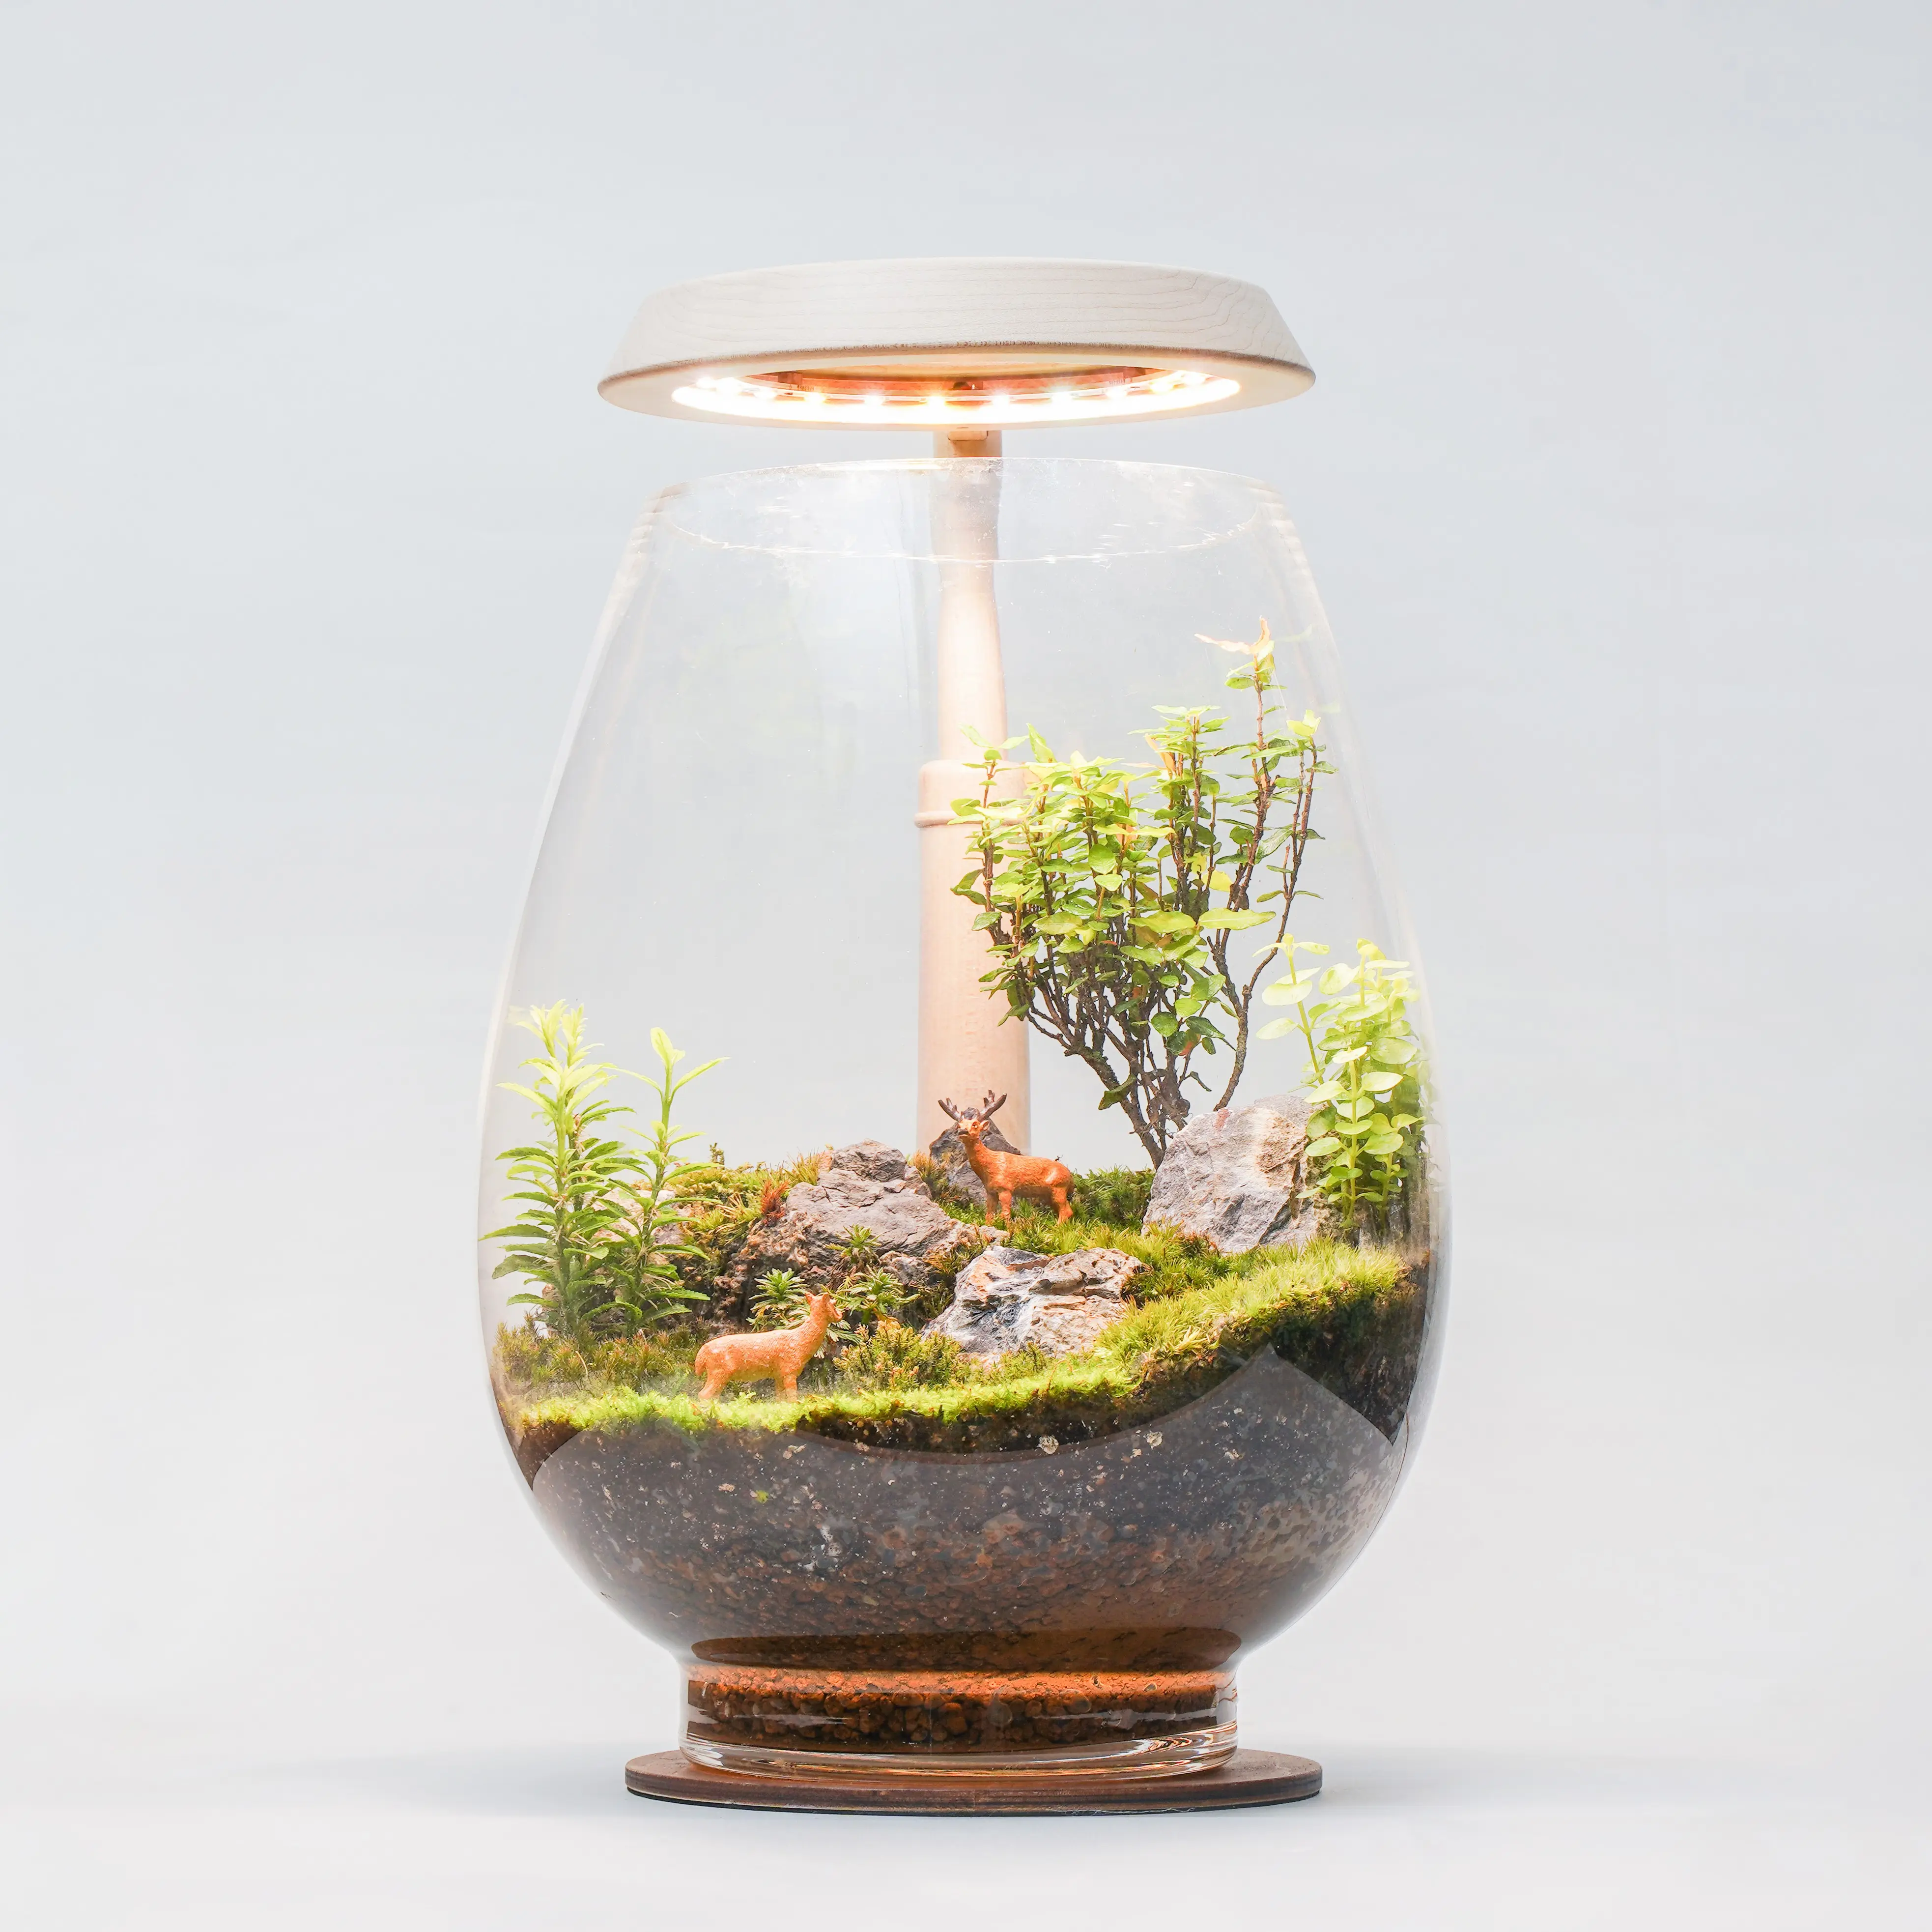 [2.9R] Mini lampe de culture LED d'intérieur faite à la main pour jardin, plante en bois, lampe de bureau